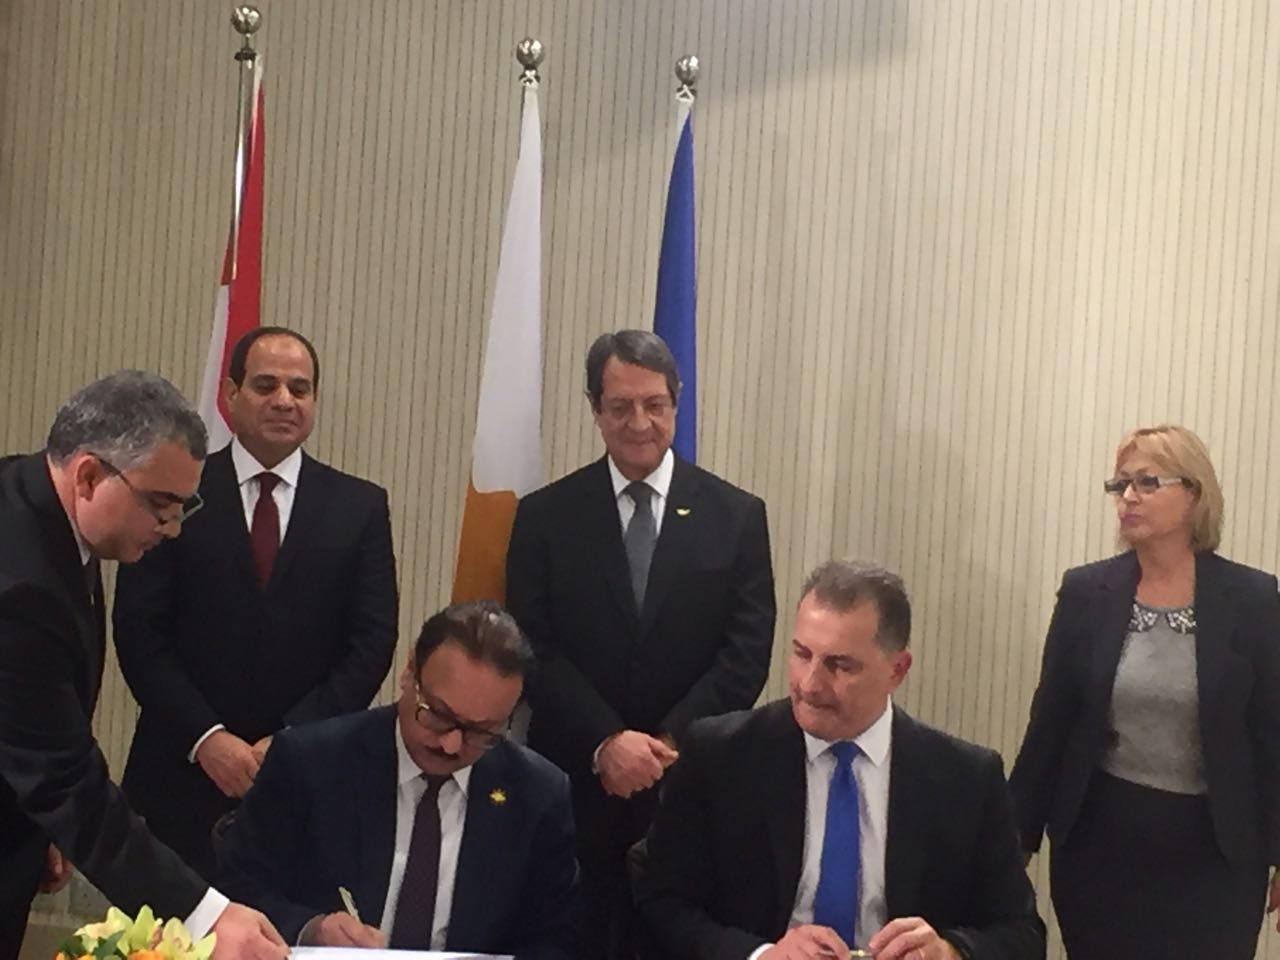 توقيع مذكرة تعاون في مجال الأعمال والاتصال بين مصر وقبرص3